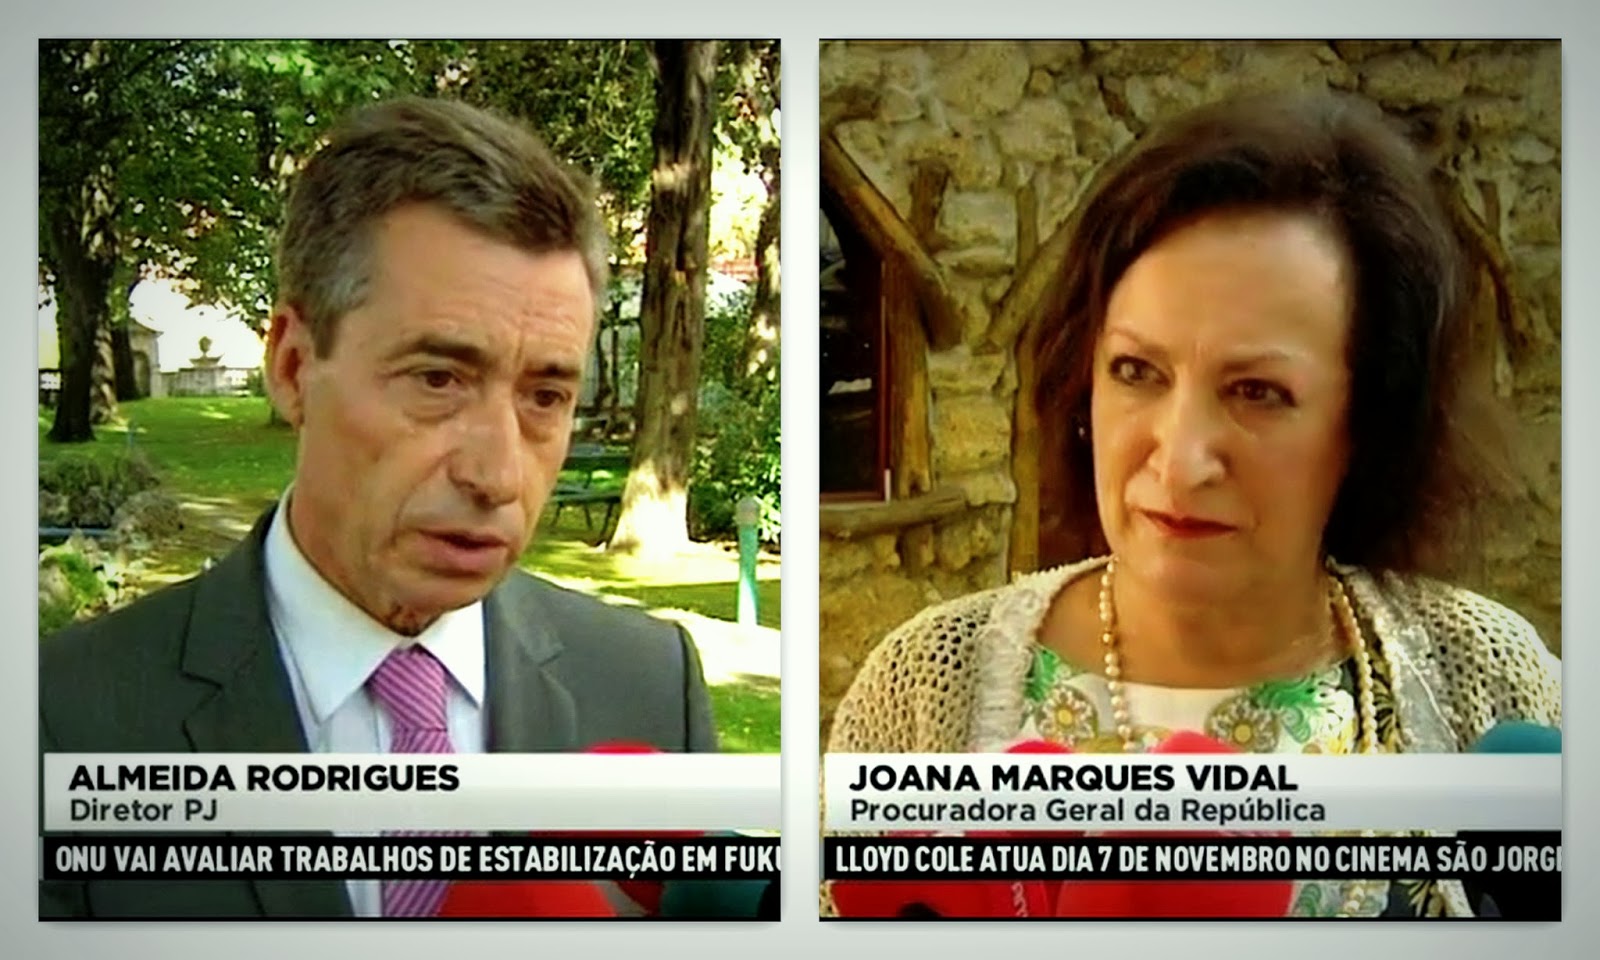 José Maria de Almeida Rodrigues and Joana Marques Vidal